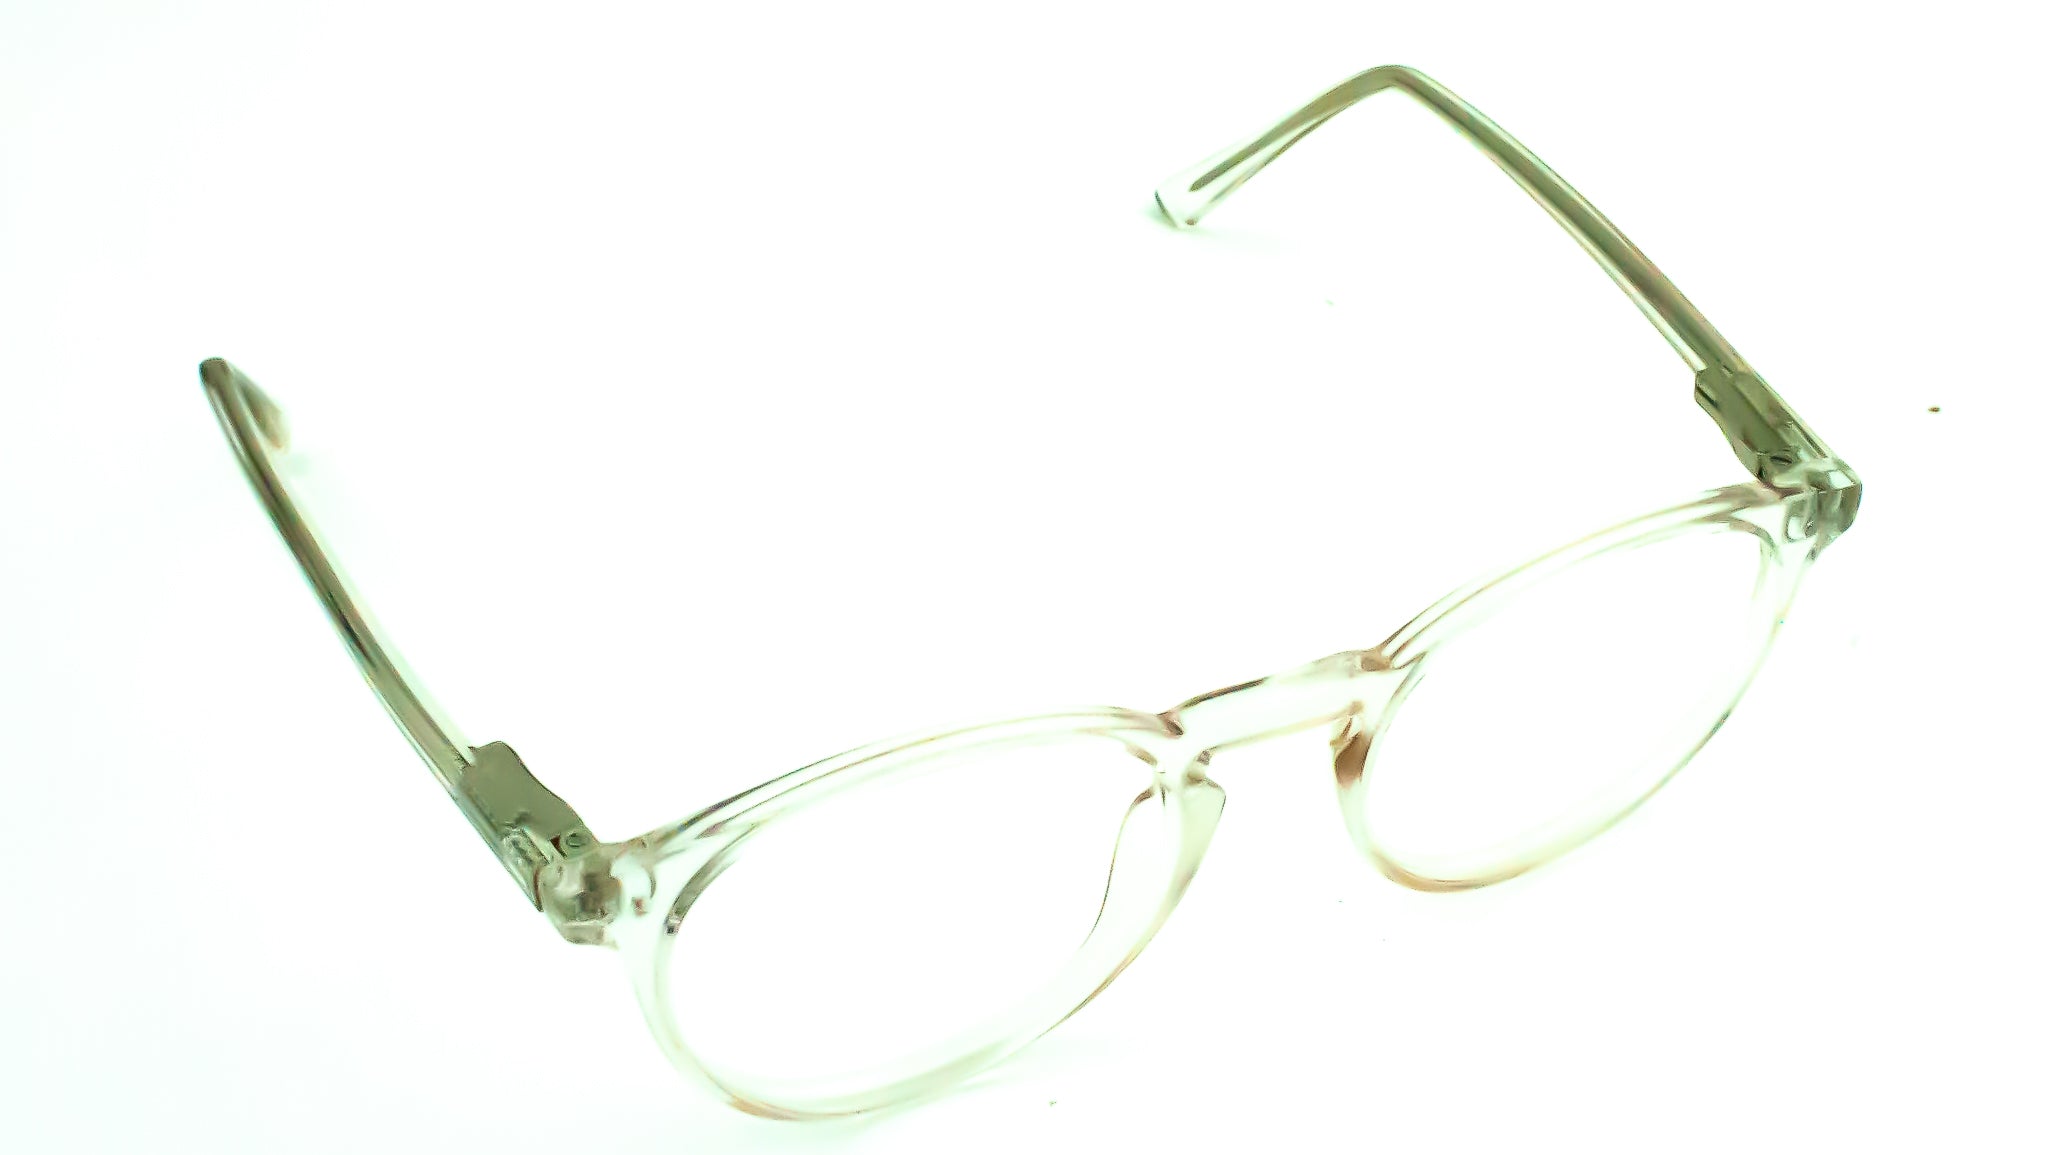 Base Clear Glasses Frames